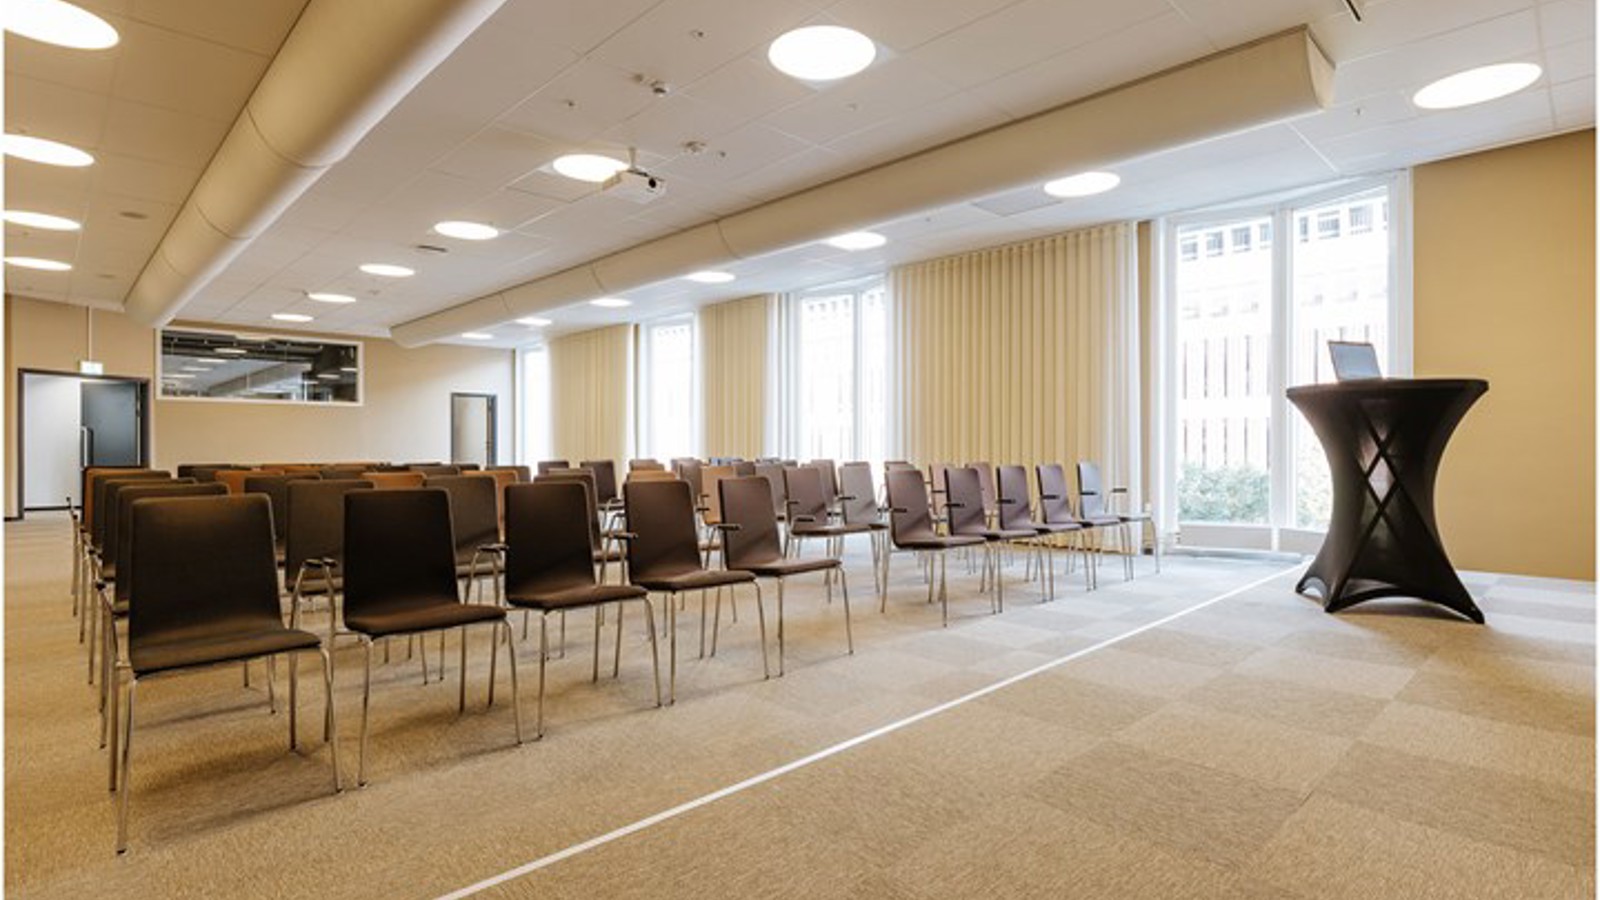 Konferenslokal med biosittning, scen och stora fönster